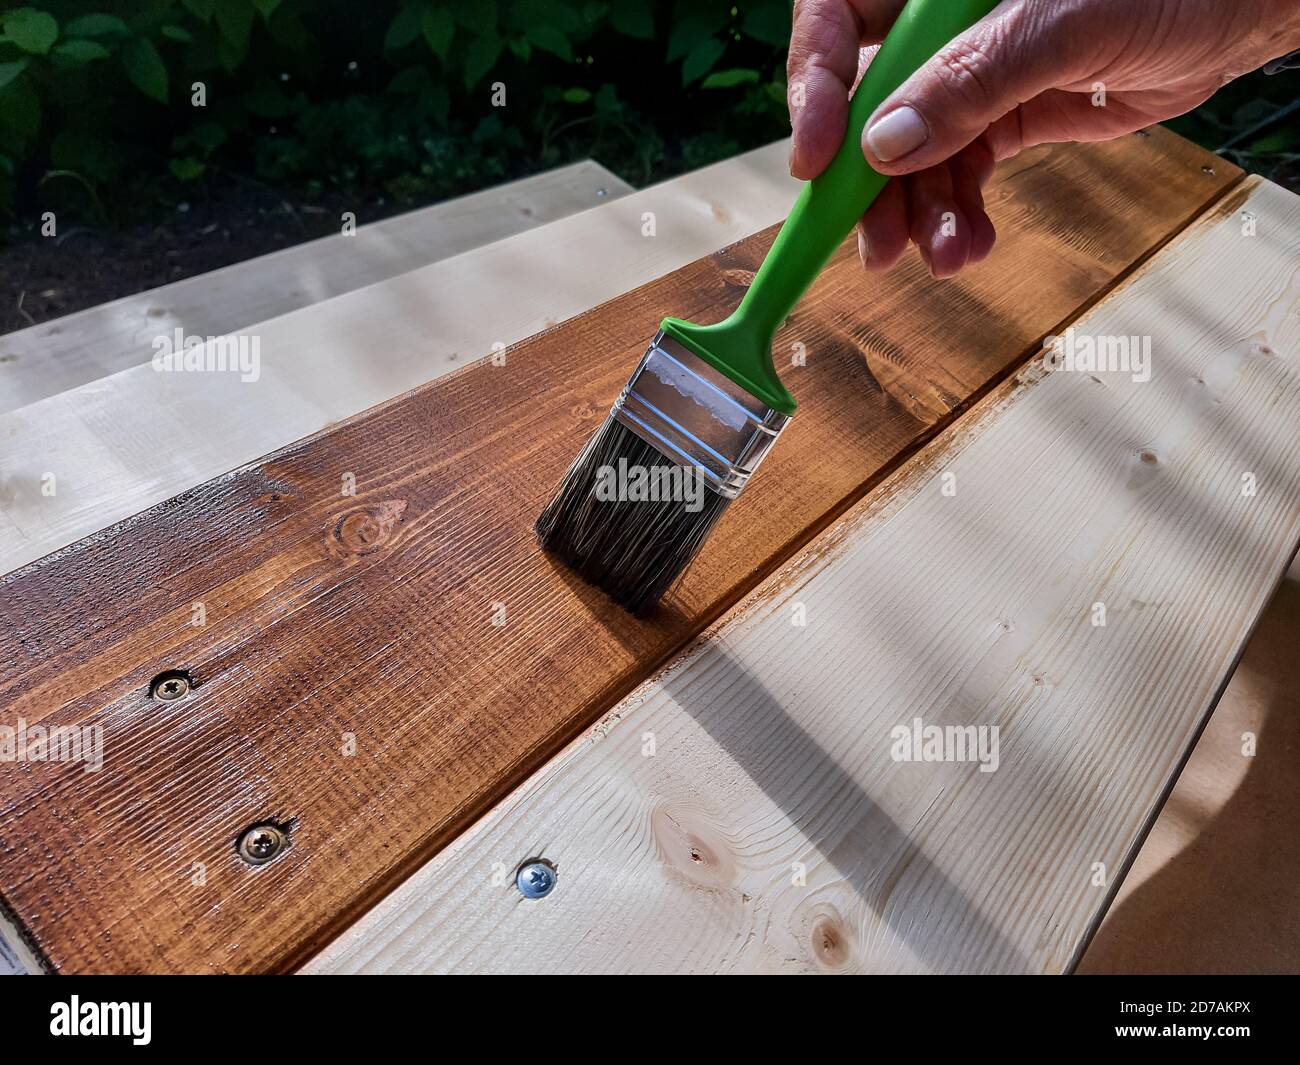 Schutzlack auf einen Holzboden der Terrasse auftragen.Holzarbeiten außen  malen.Hand Verwenden Sie Pinsel Lack klar auf Holzoberfläche  Stockfotografie - Alamy